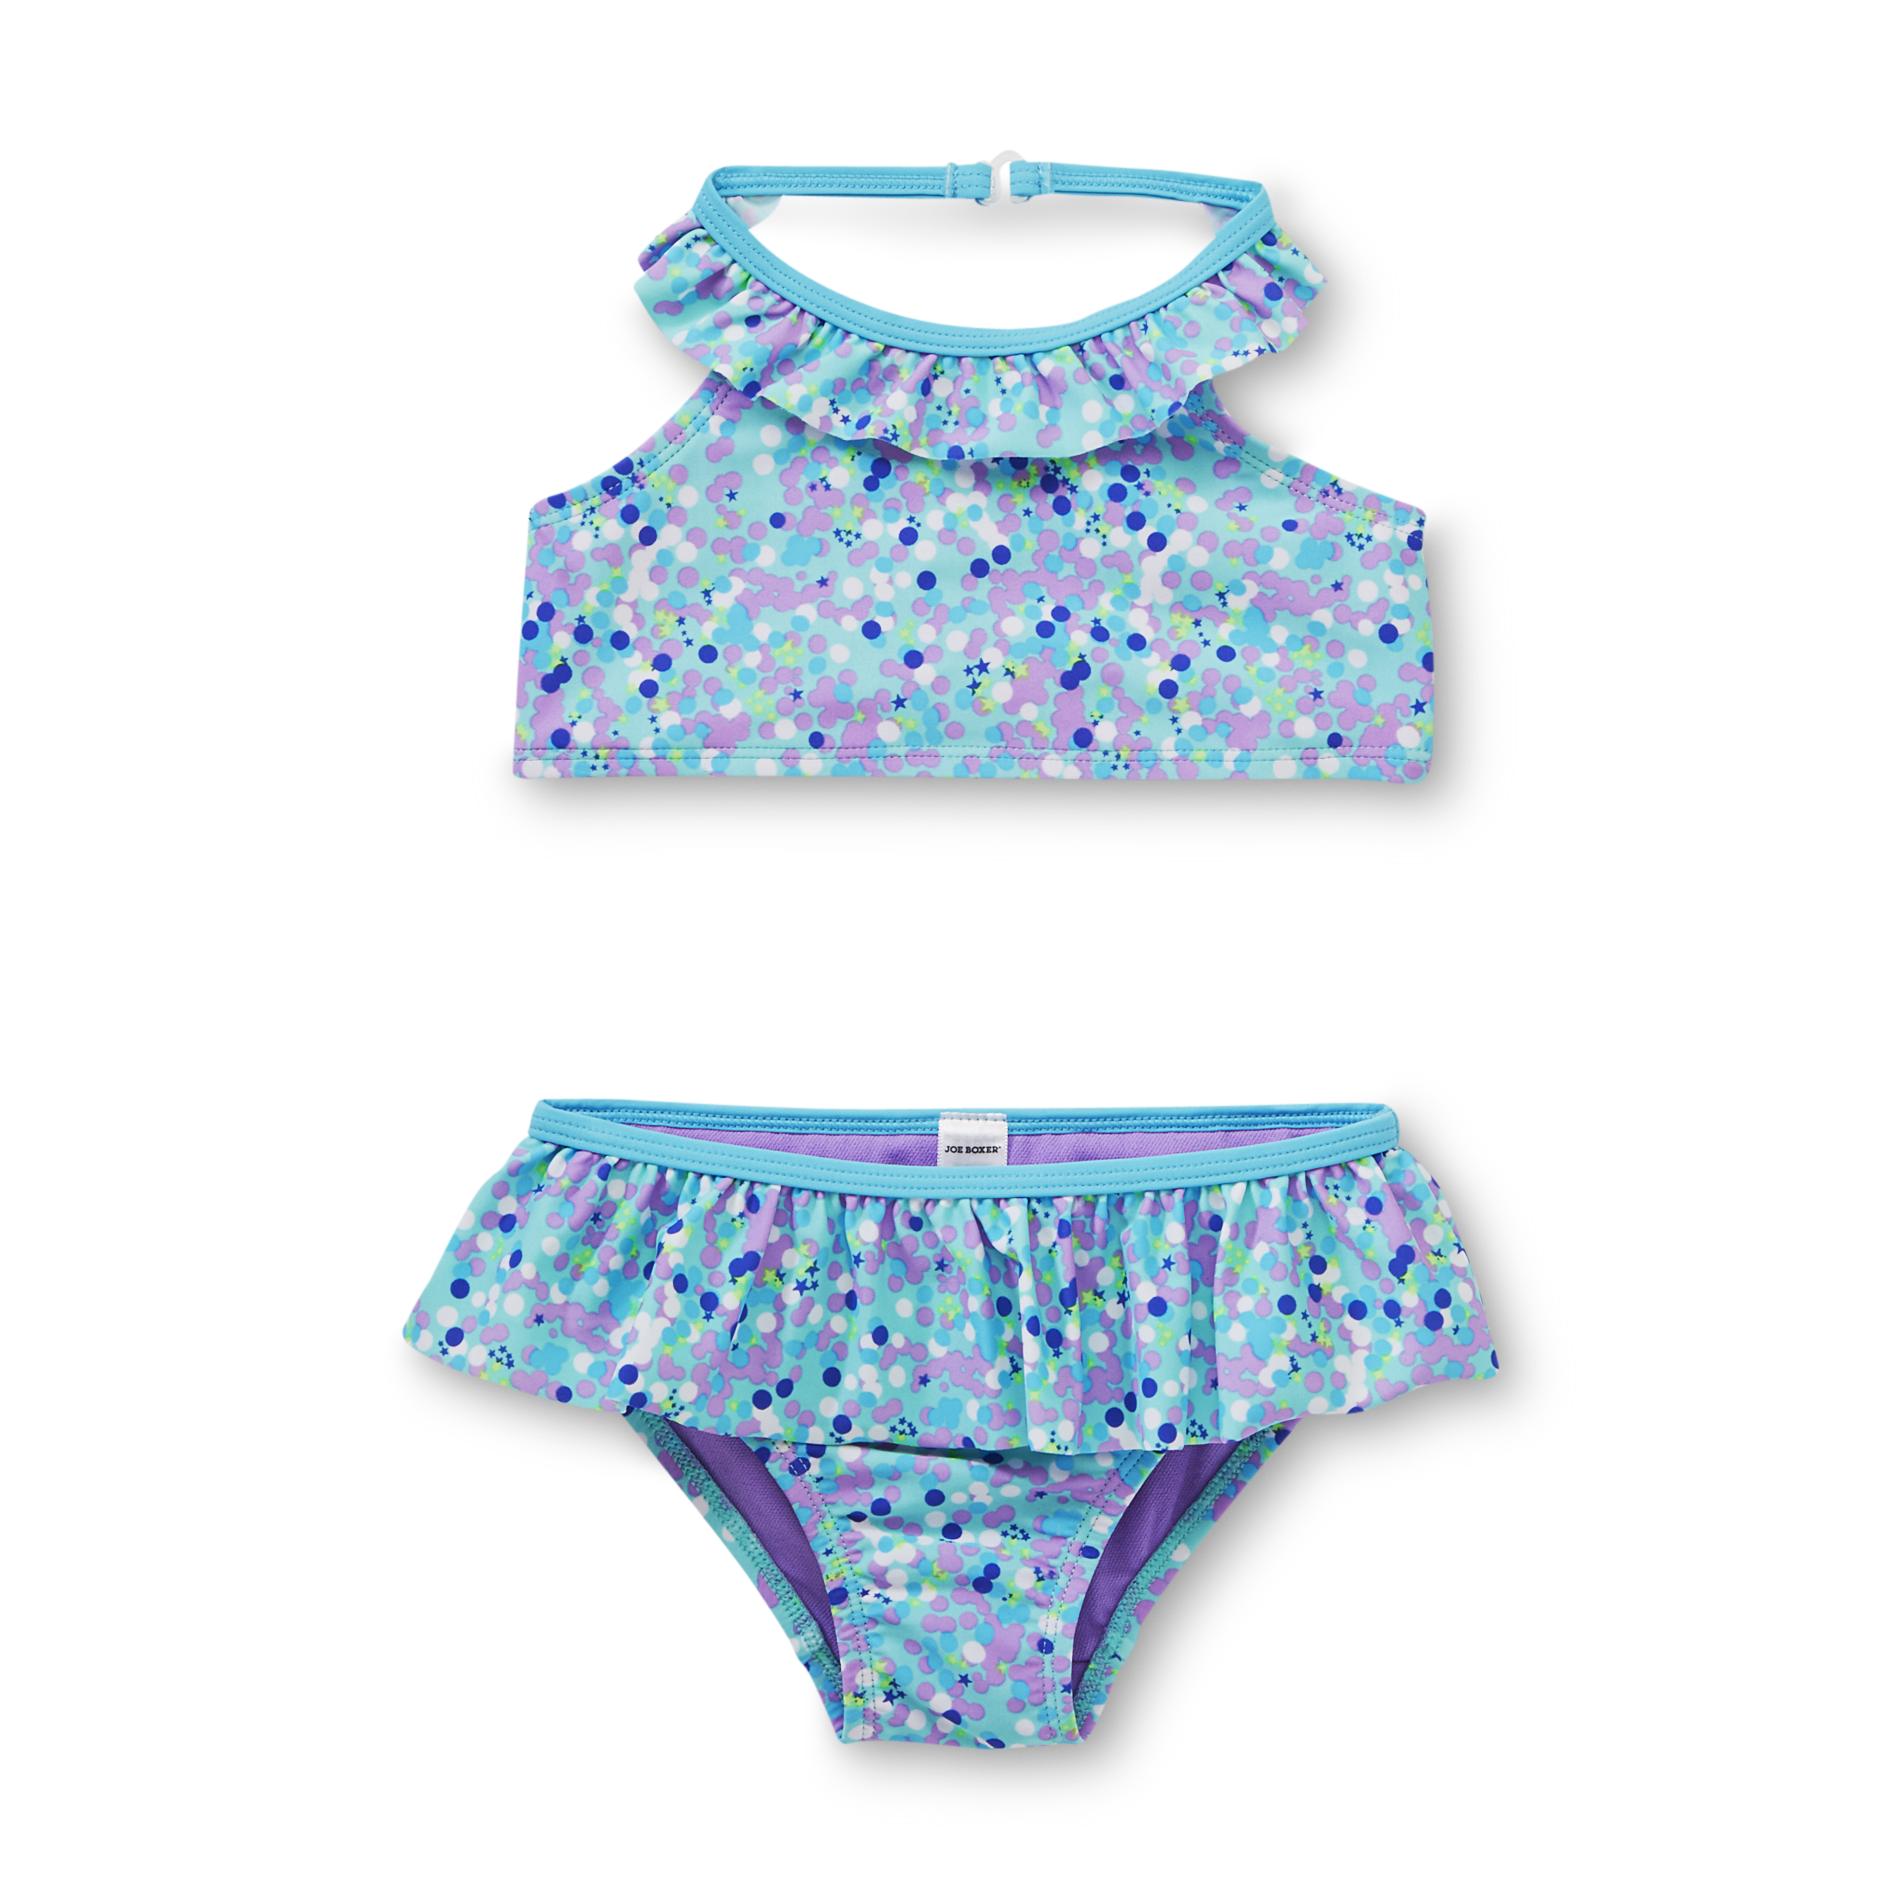 Joe Boxer Toddler Girl's Swimsuit Top & Bottoms - Bubbles & Stars